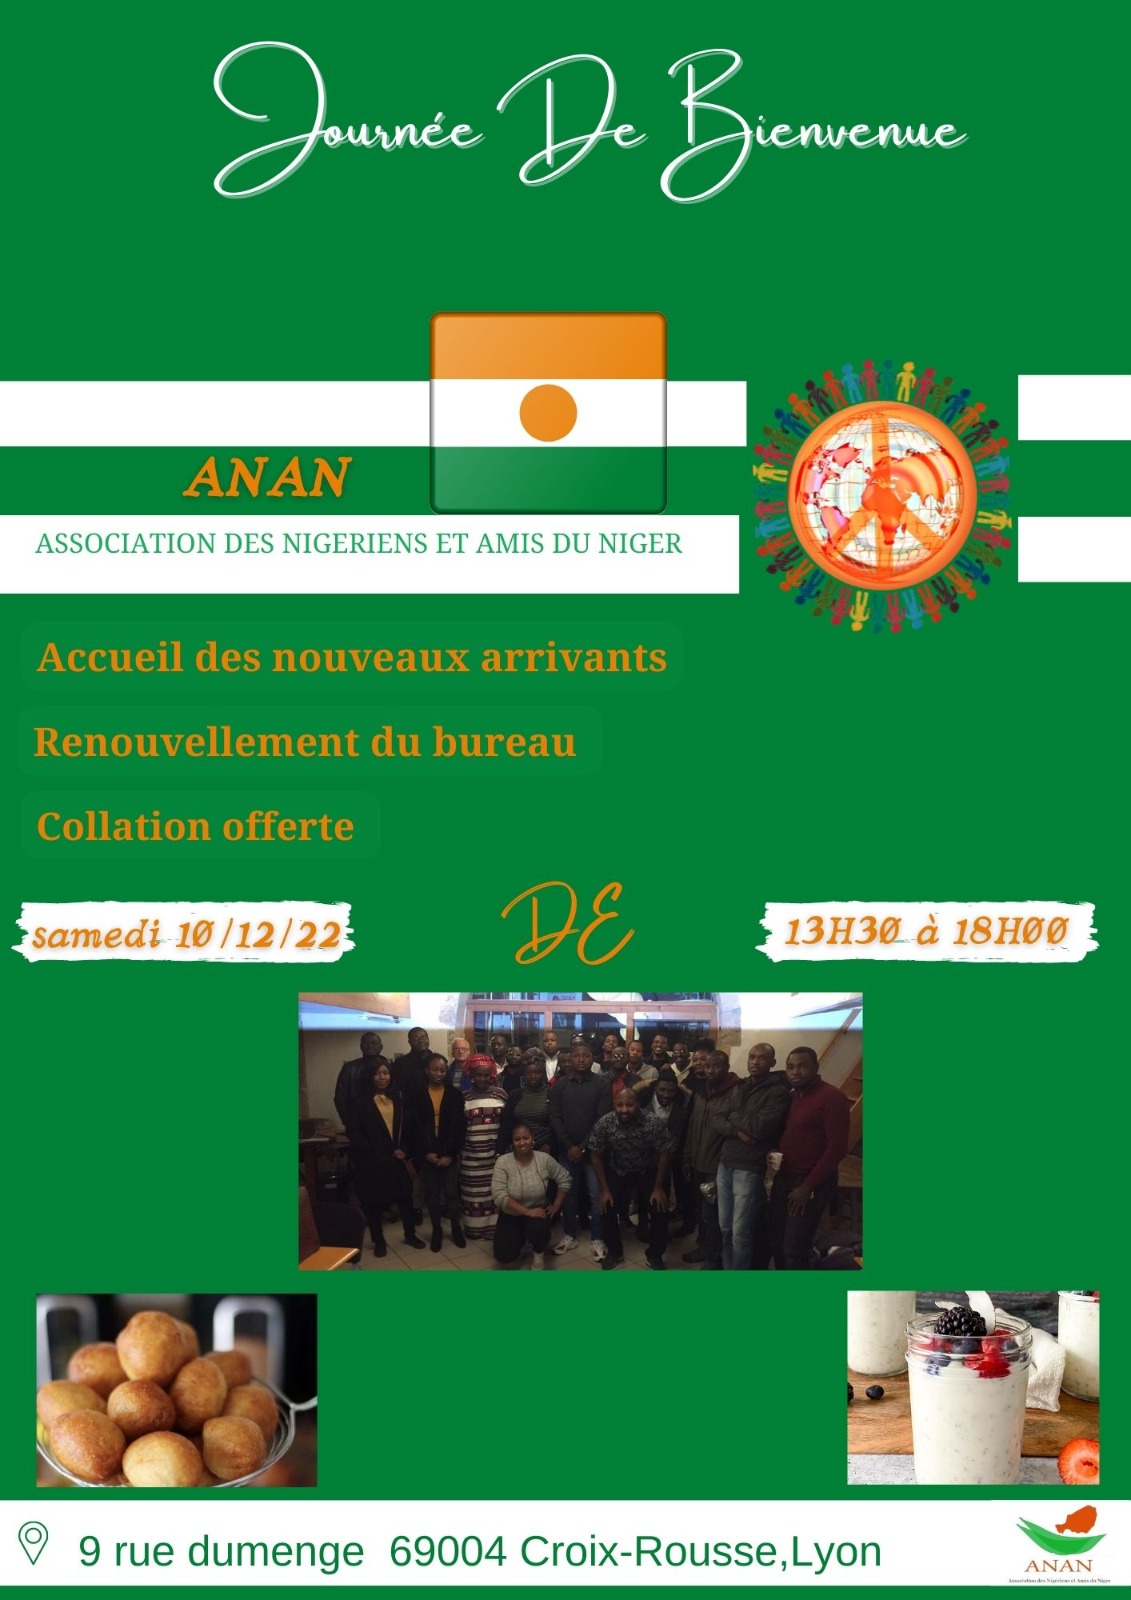 [NIGER] Journée d’accueil des nouveaux et Assemblée Générale de l’ANAN à Lyon samedi 10 décembre 2022